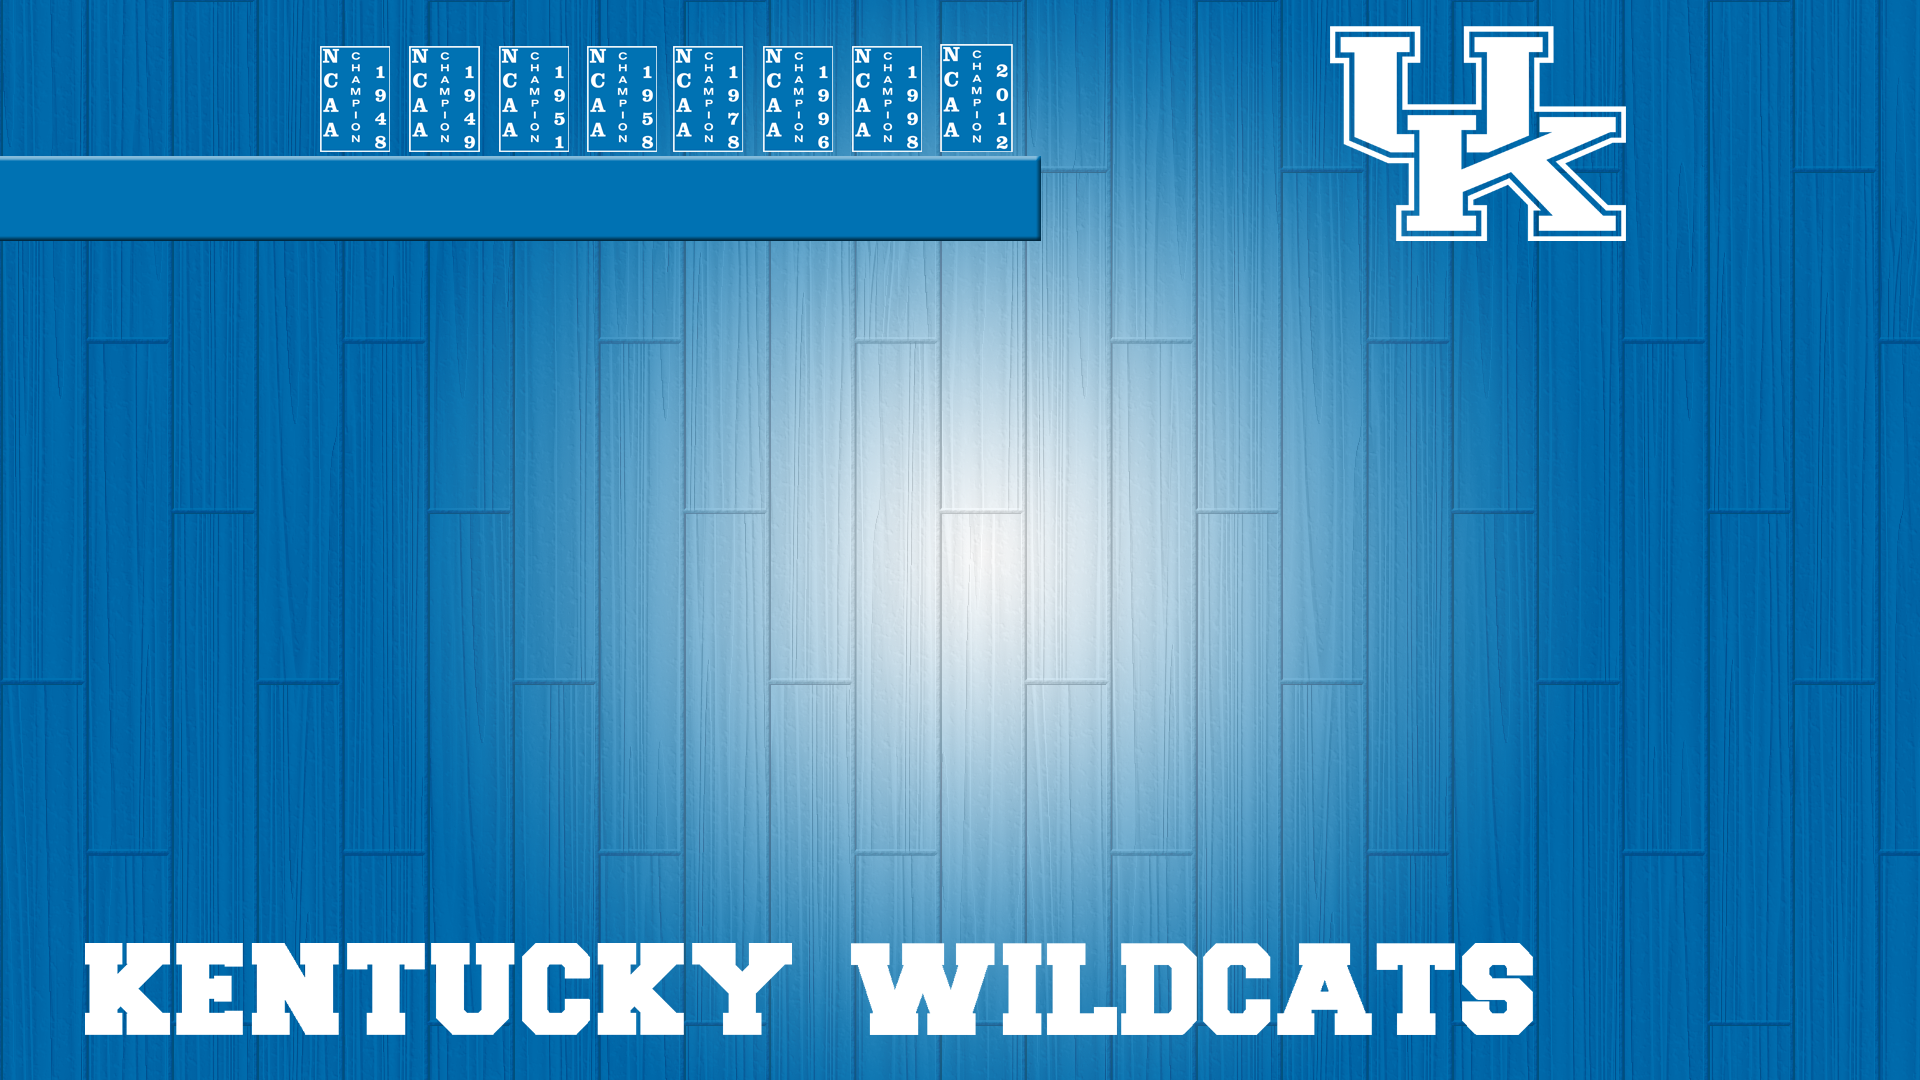 Kentucky Mens Basketball on Twitter  H23Ash  wallpaper   WildcatWednesday WallpaperWednesday httpstcoxx15QUxdVP  Twitter